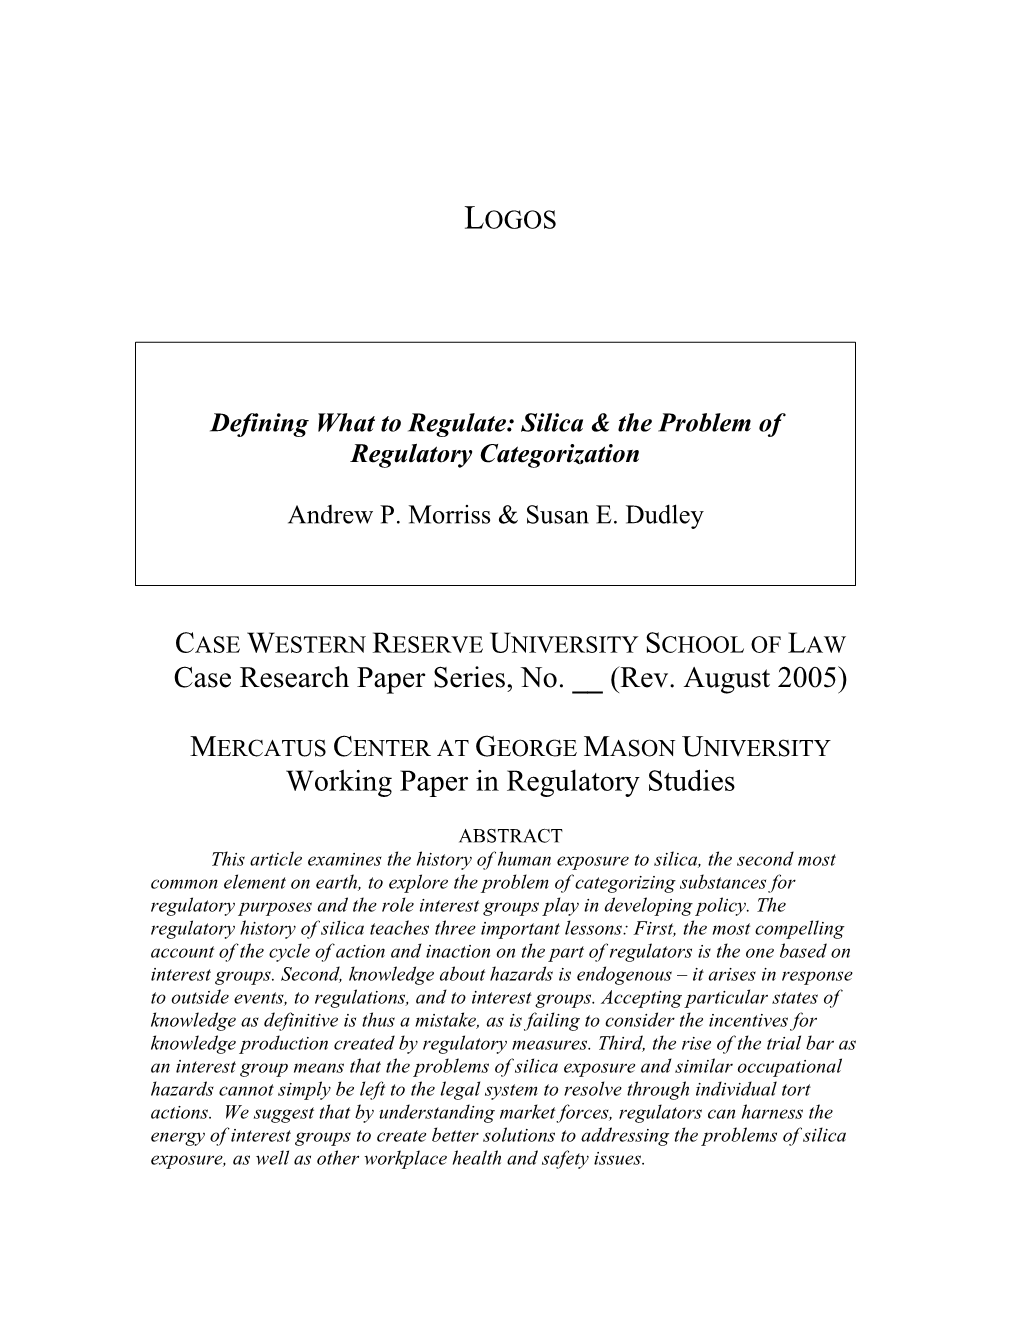 (Rev. August 2005) Working Paper in Regulatory Studies